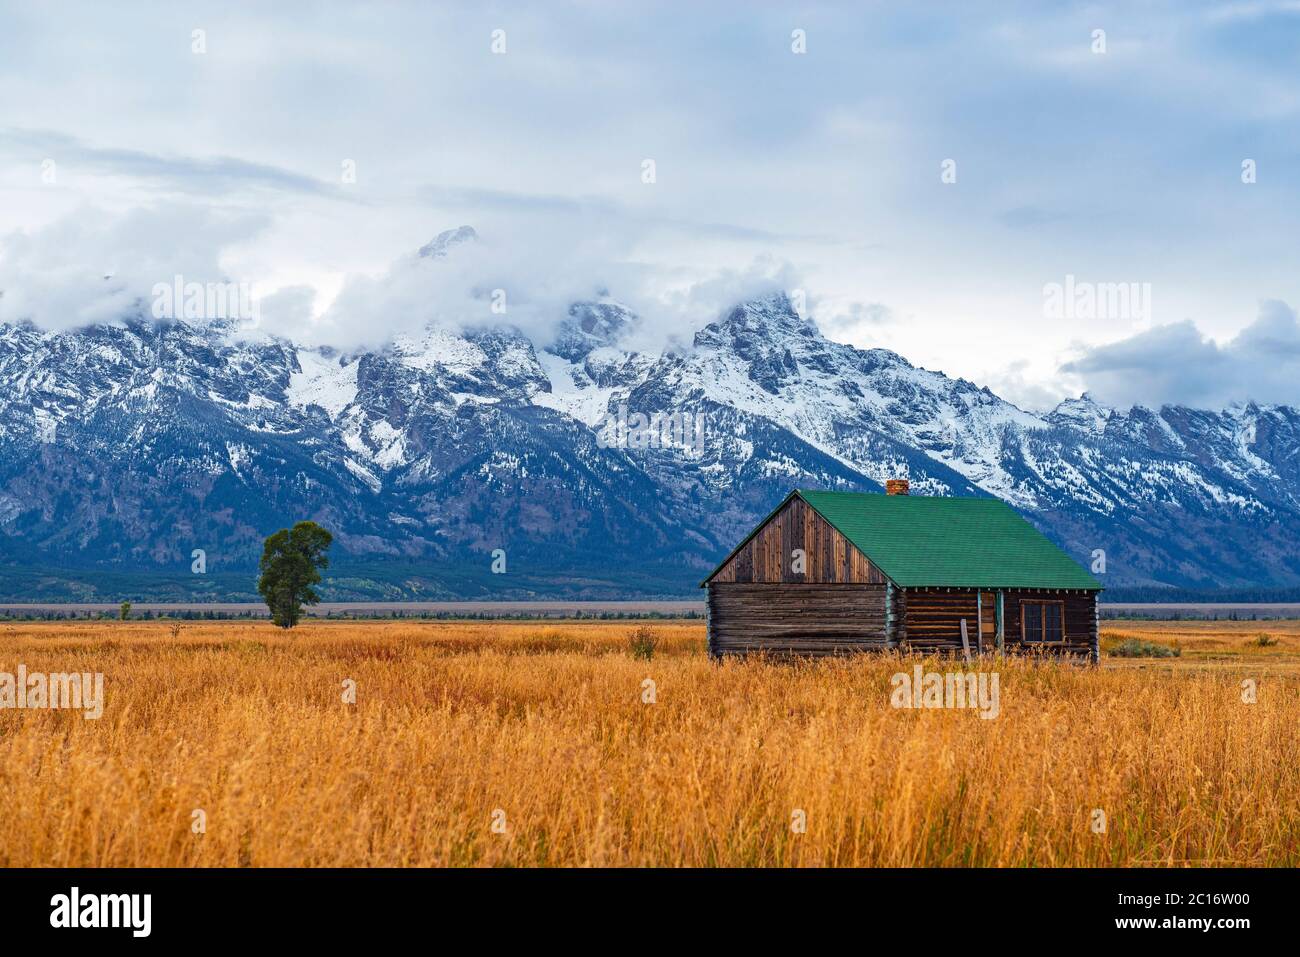 La chaîne de Grand Teton culmine dans la première neige et brume en automne avec un bâtiment de la grange T. A. Molton à l'intérieur du parc national de Grand Teton, Wyoming, États-Unis. Banque D'Images